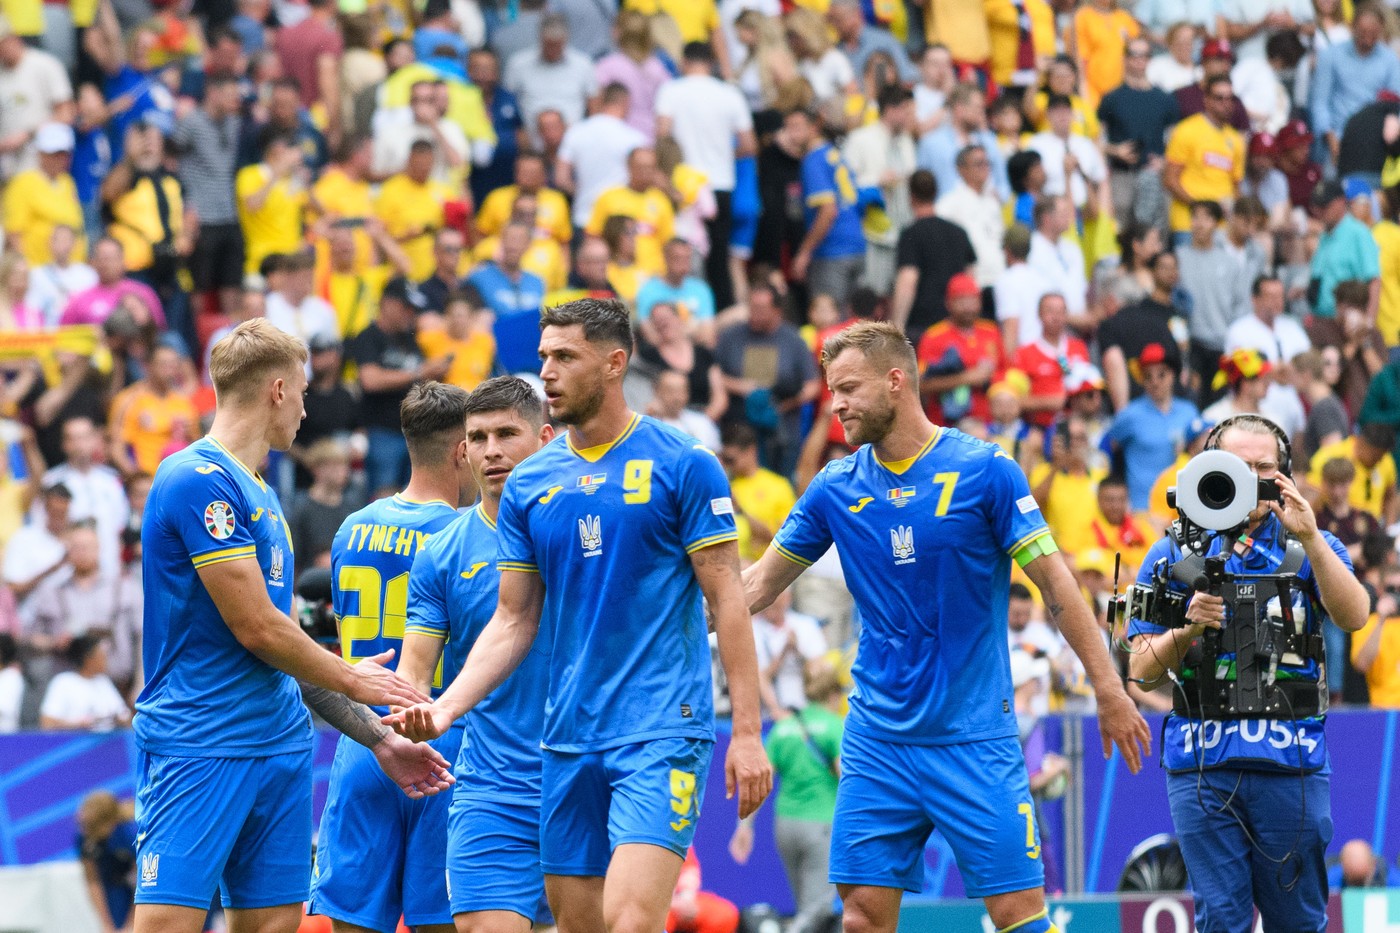 N-a mai suportat! Cuvinte grele după România - Ucraina 3-0: O rușine până la lacrimi!